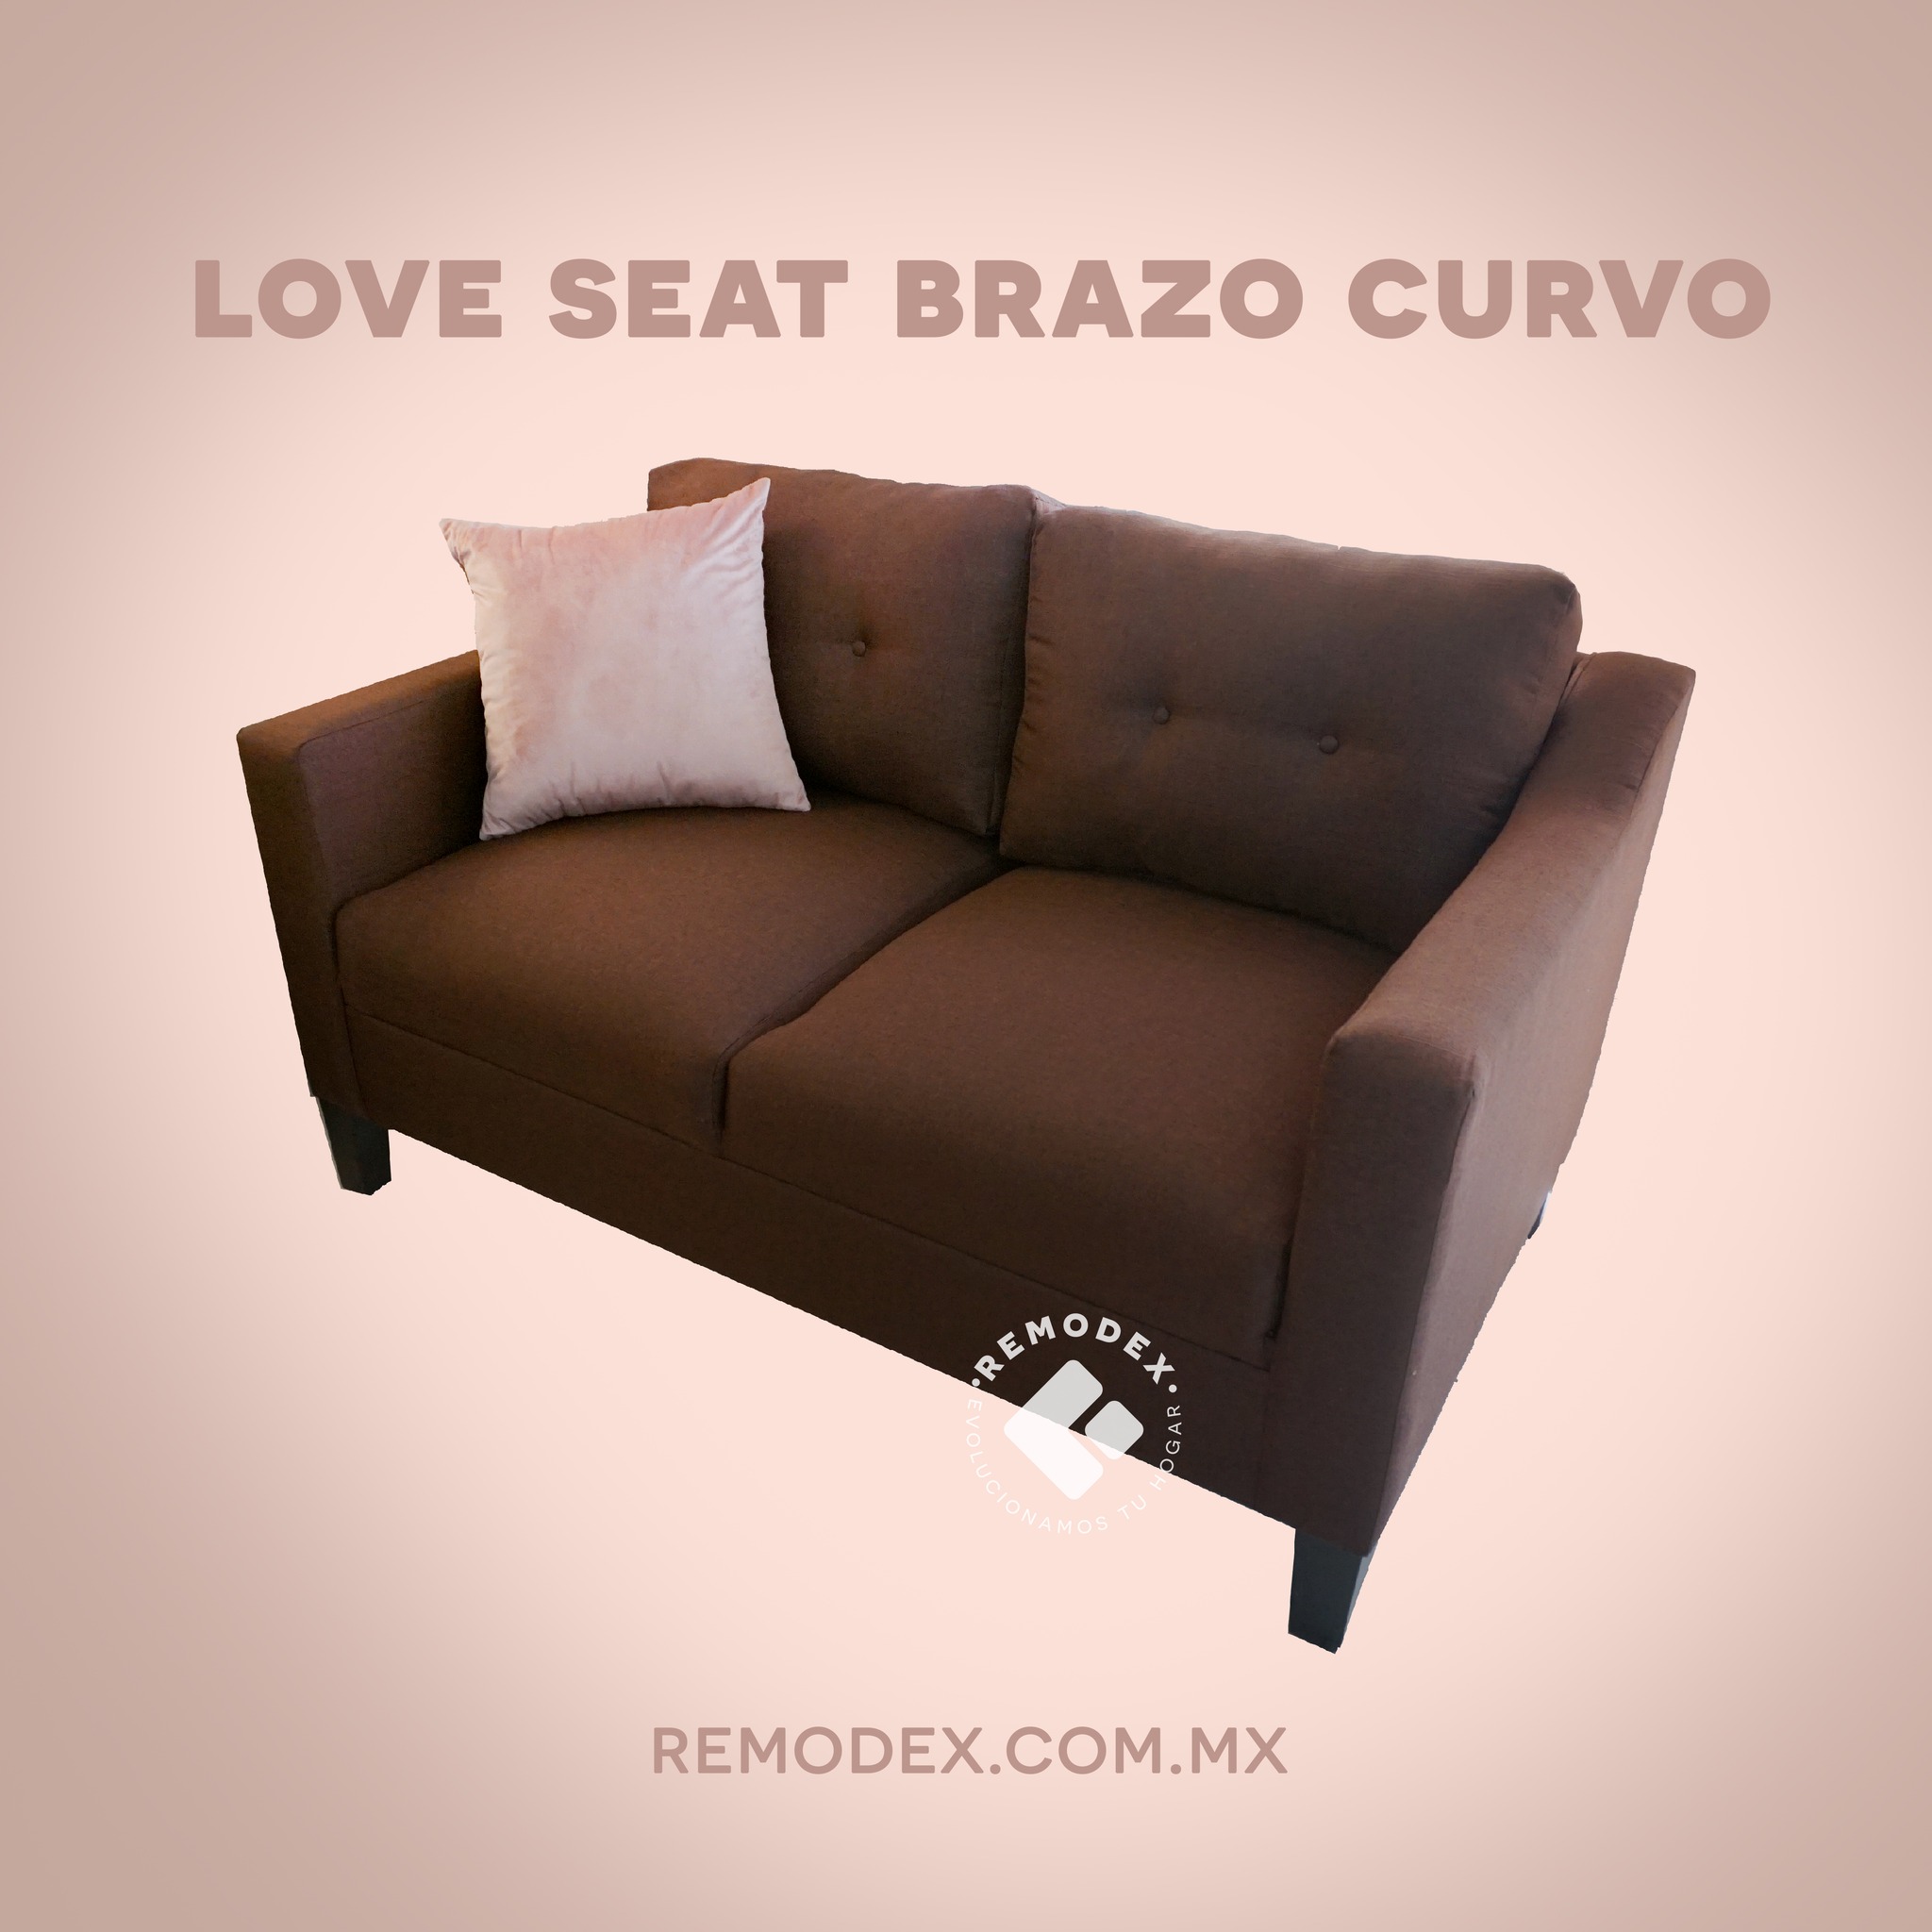 LOVE SEAT BRAZO CURVO